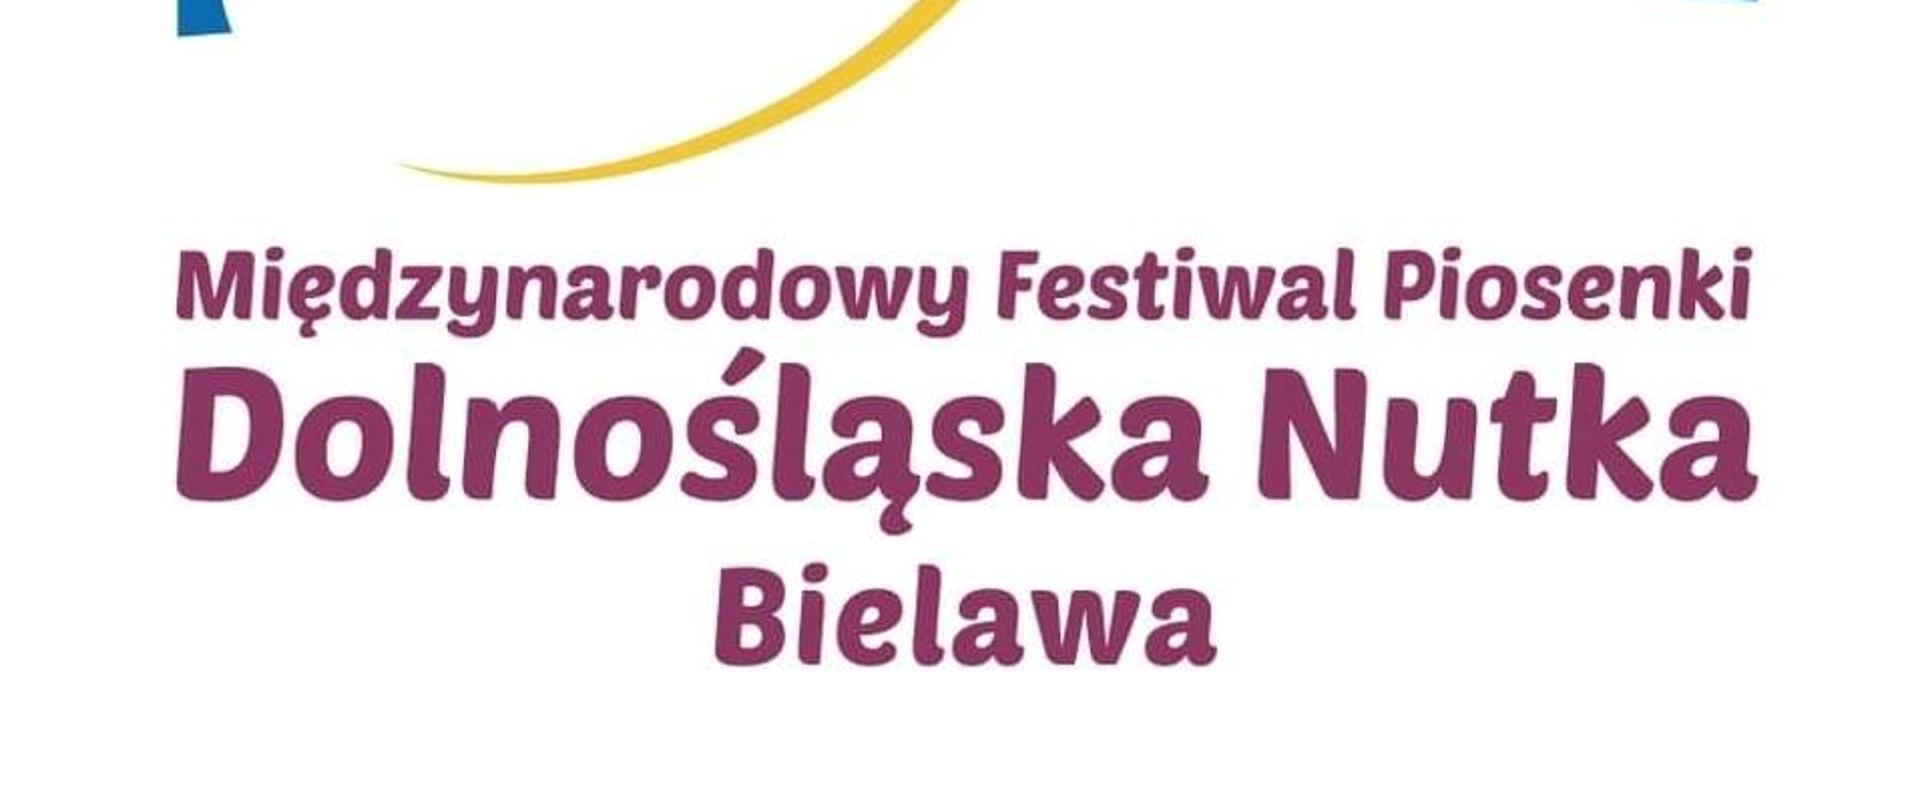 VII Międzynarodowy Festiwal Piosenki "Dolnośląska nutka" w Bielawie